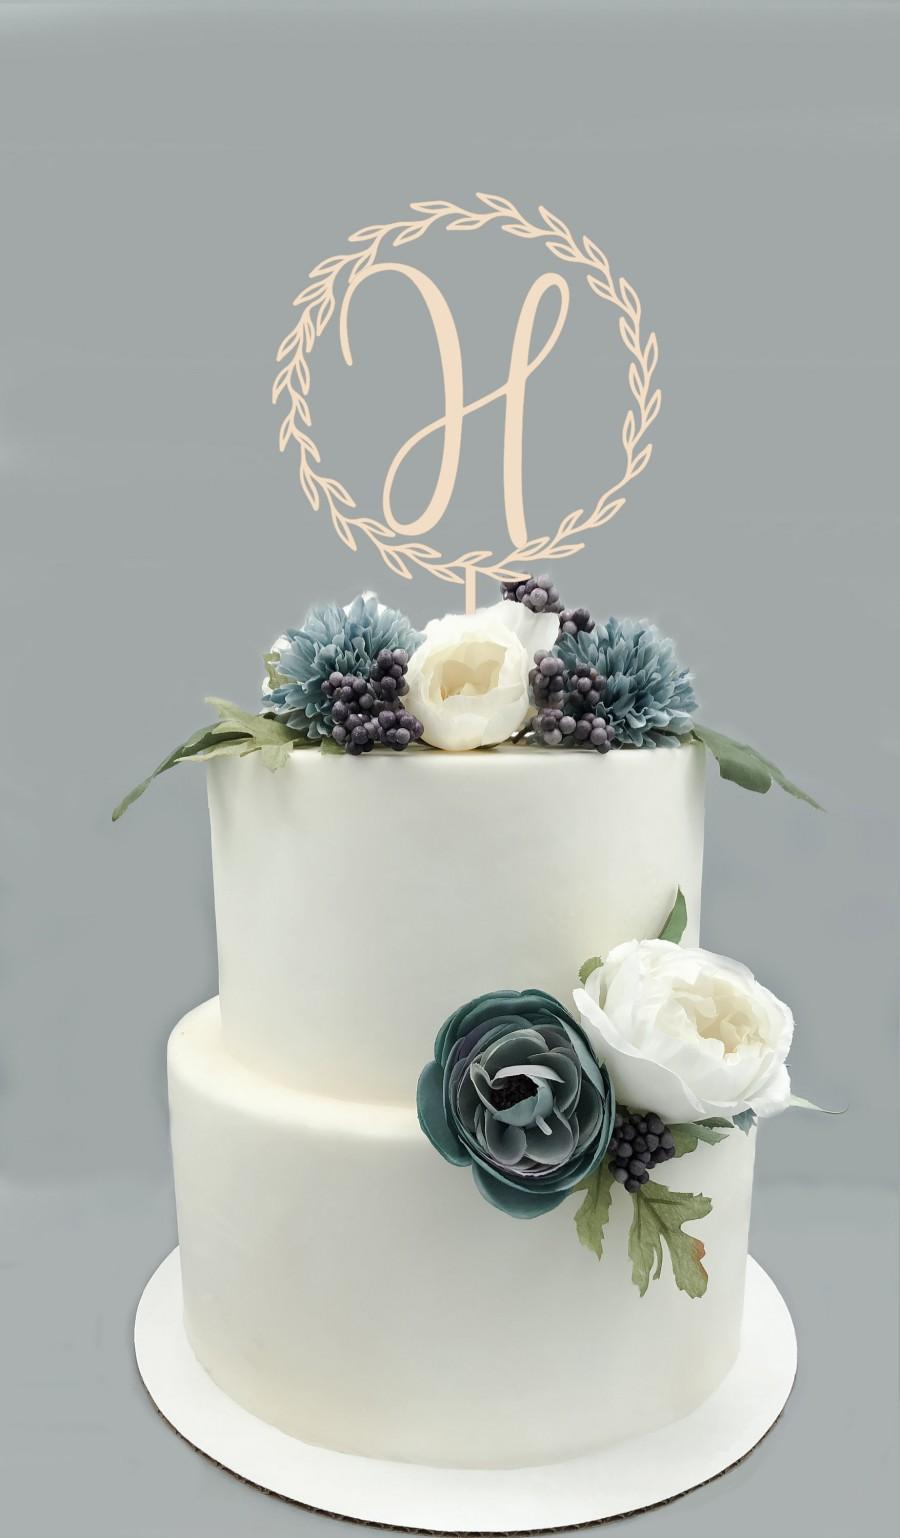 Mariage - Personalized Wood Wreath Cake Topper - Custom Monogram Wedding Cake Topper, Rustic Wedding Decor, Cake Decor, Engagement Cake, Bridal Shower